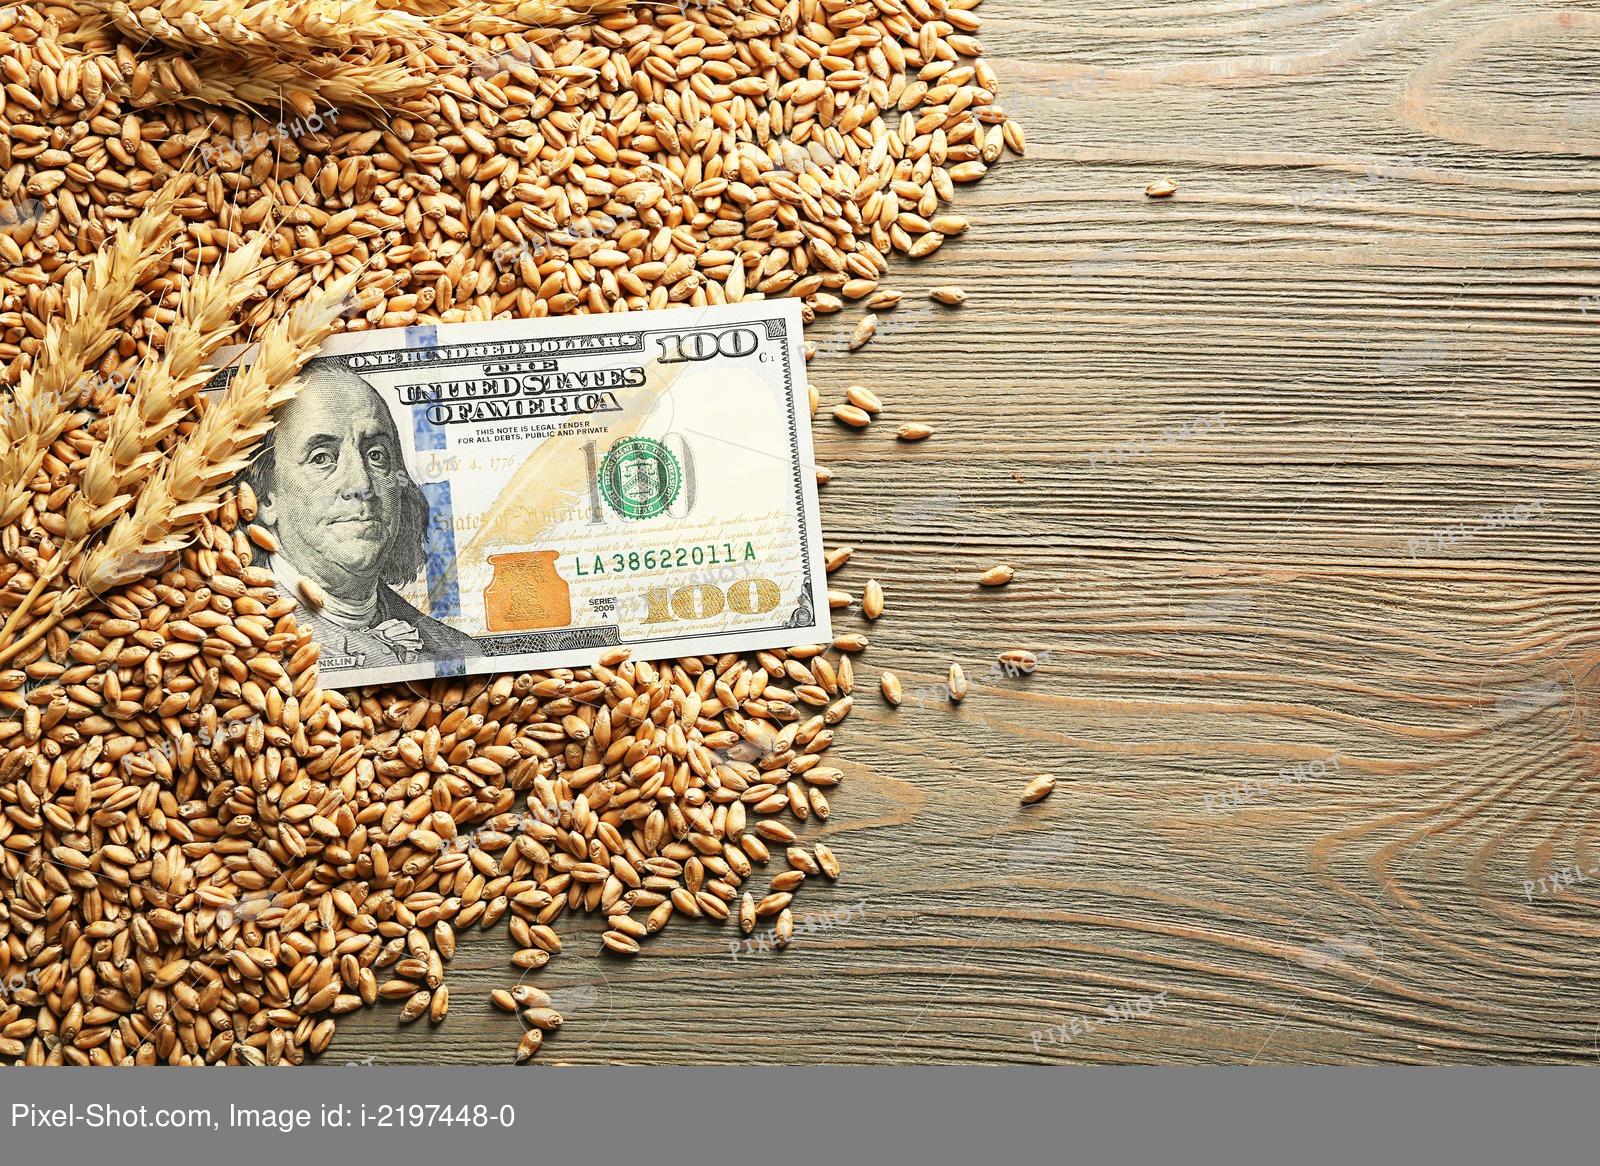 Снижение цены на пшеницу до 50 тыс. тенге прогнозируют в Казахстане